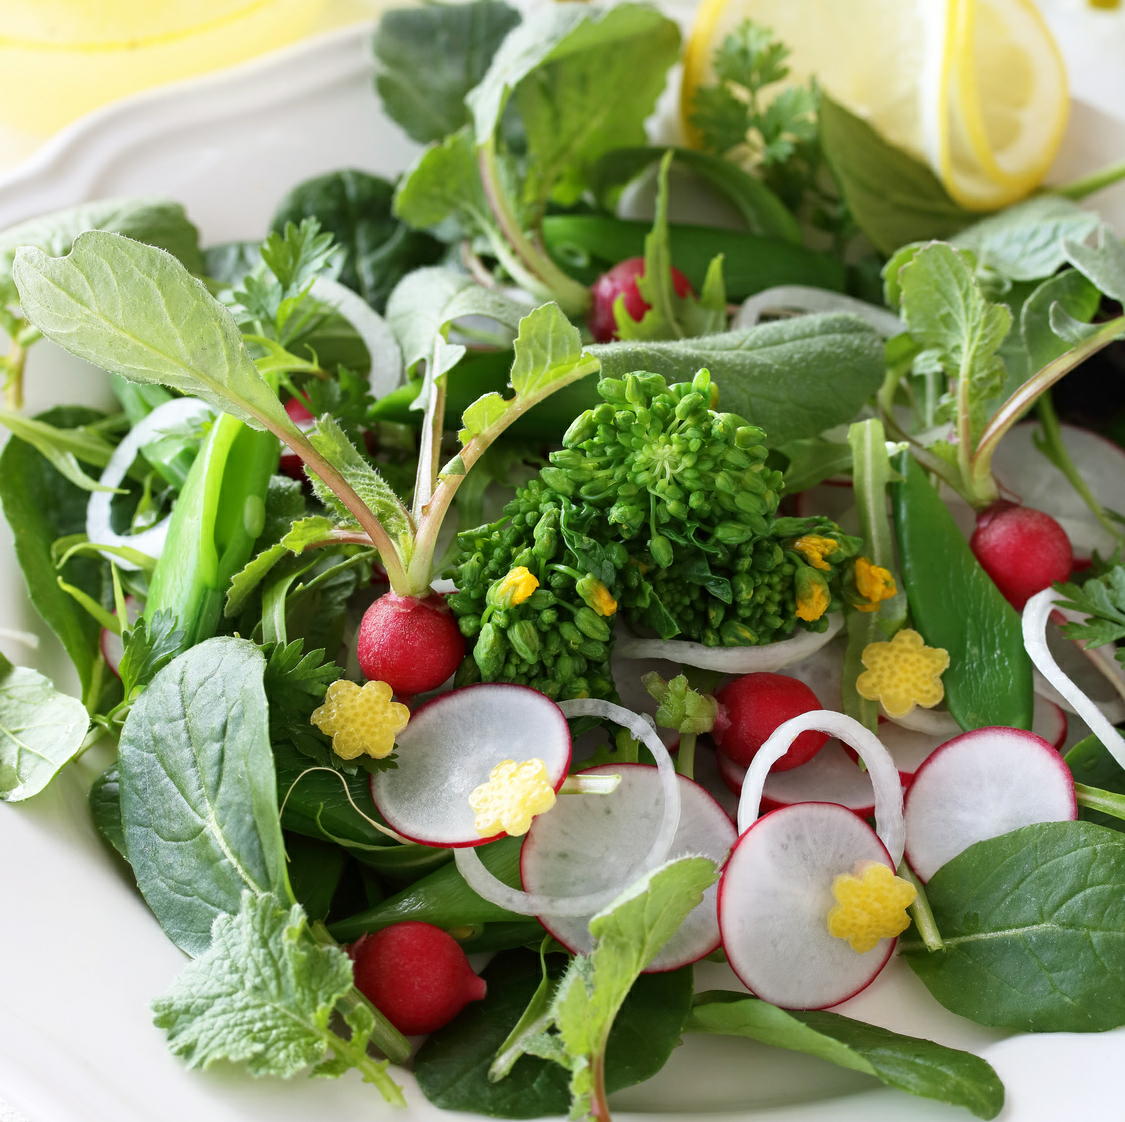 緑色の葉物野菜を毎日食べると認知能力の衰えを抑えられる